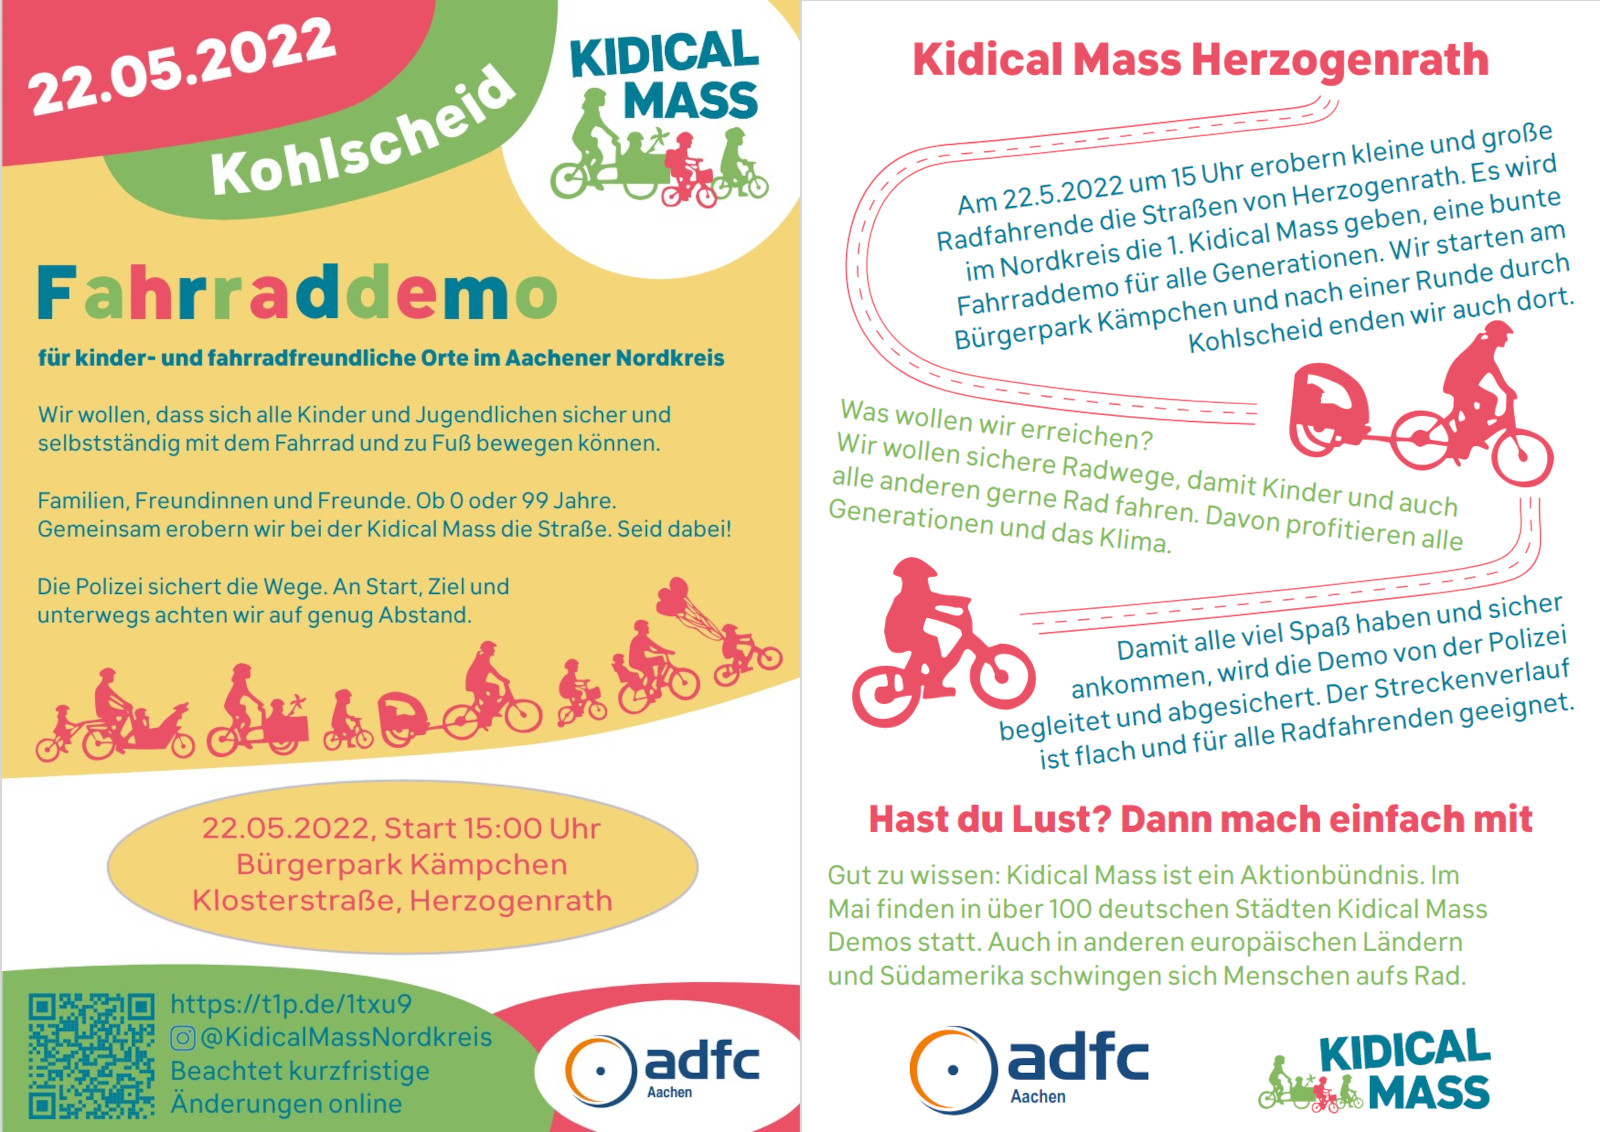 Bild: Flyer zur Kidical Mass